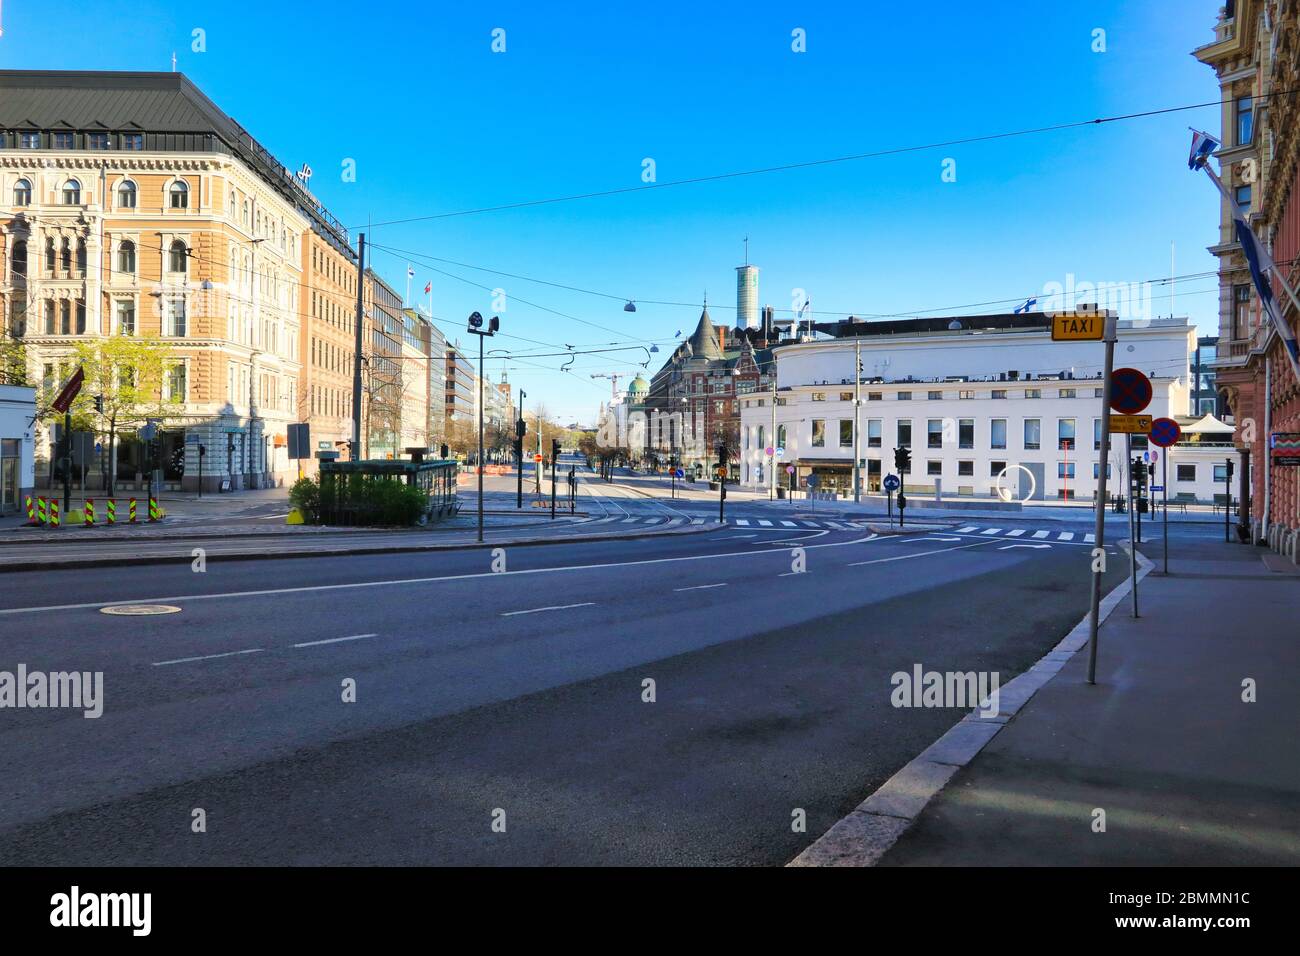 Helsinki, Finlandia. 10 maggio 2020, Giornata della Madre. Normalmente Erotaja e Mannerheimintie Street a Helsinki sono molto tranquille durante la pandemia di coronavirus. Foto Stock